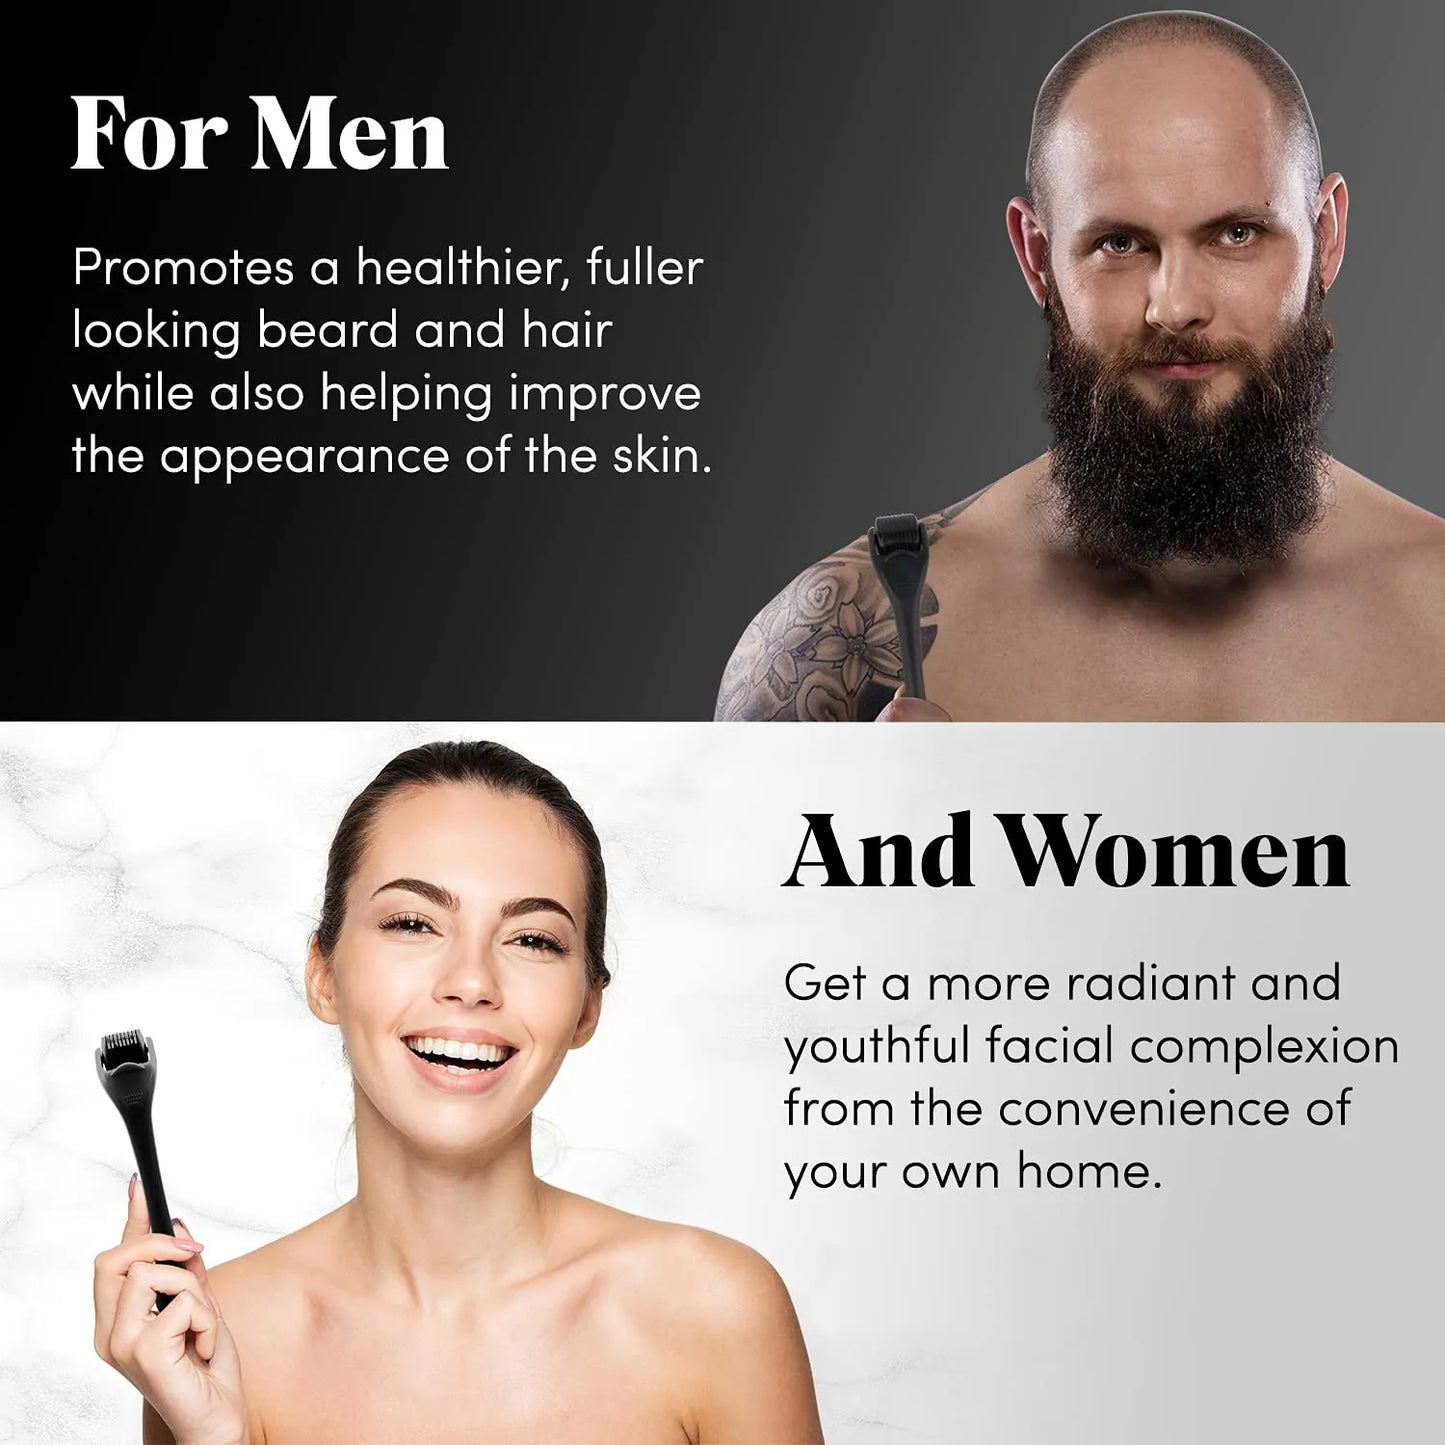 Derma Roller for Skin, Beard & Hair